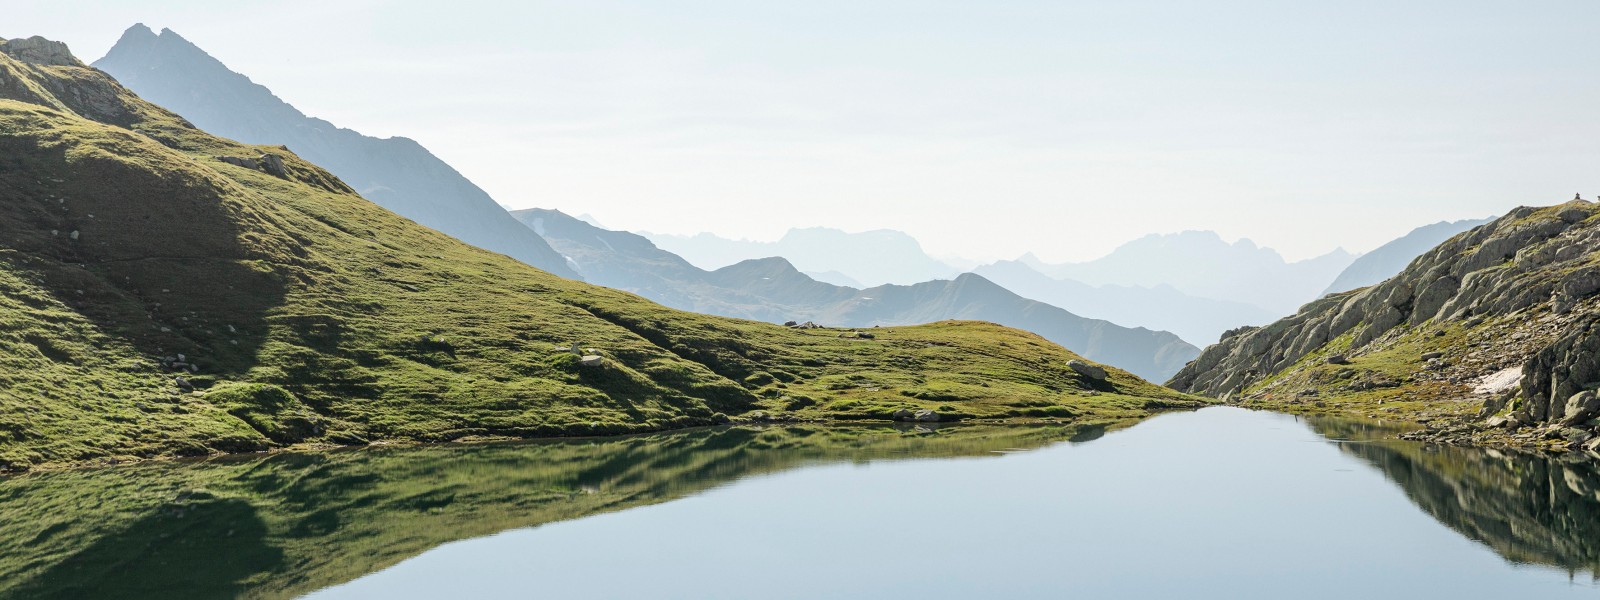 Bergsee in grüner Landschaft mit Bergketten im Hintergrund (© Geberit)